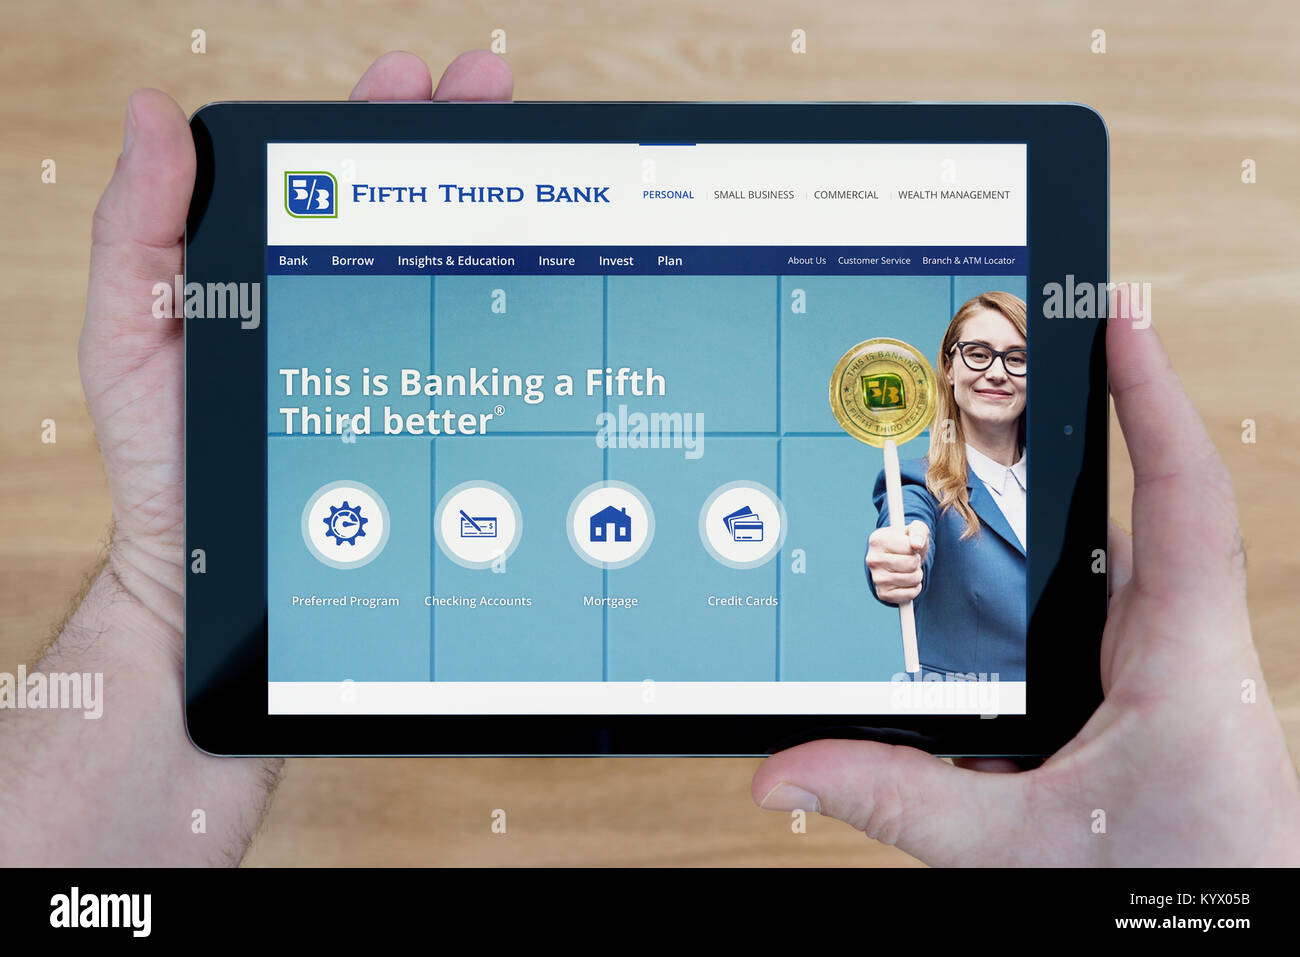 Un homme regarde la Fifth Third Bank site sur son iPad tablet device, avec une table en bois page contexte (usage éditorial uniquement) Banque D'Images